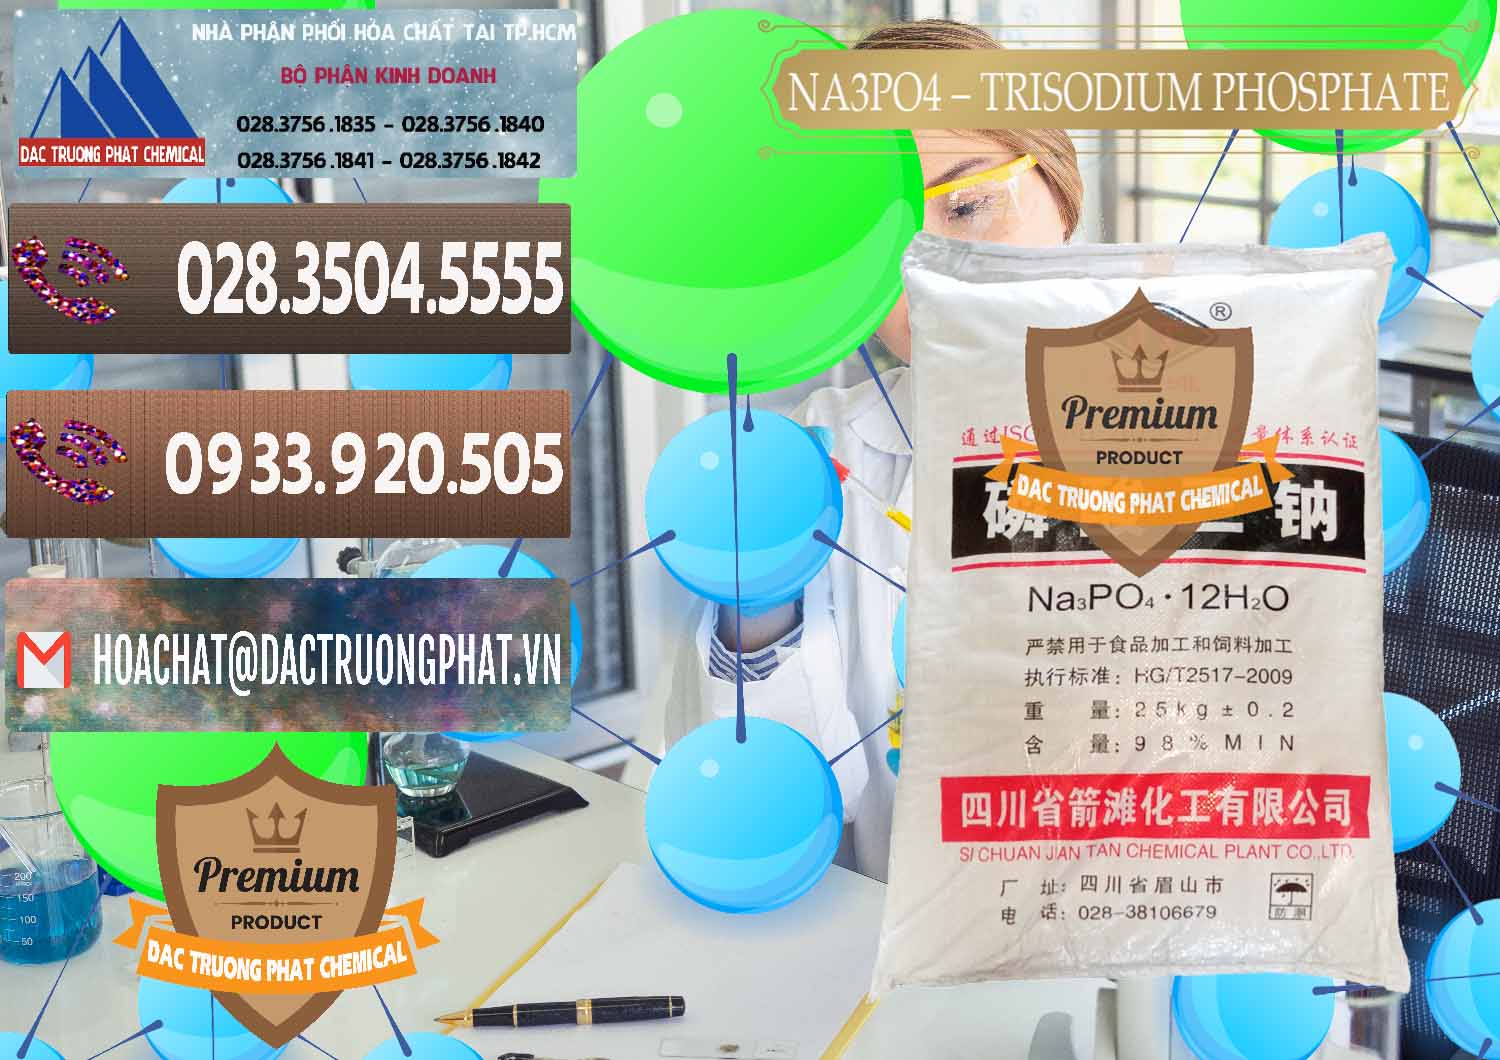 Đơn vị chuyên bán - cung ứng Na3PO4 – Trisodium Phosphate Trung Quốc China JT - 0102 - Đơn vị chuyên cung ứng - phân phối hóa chất tại TP.HCM - hoachatviet.net